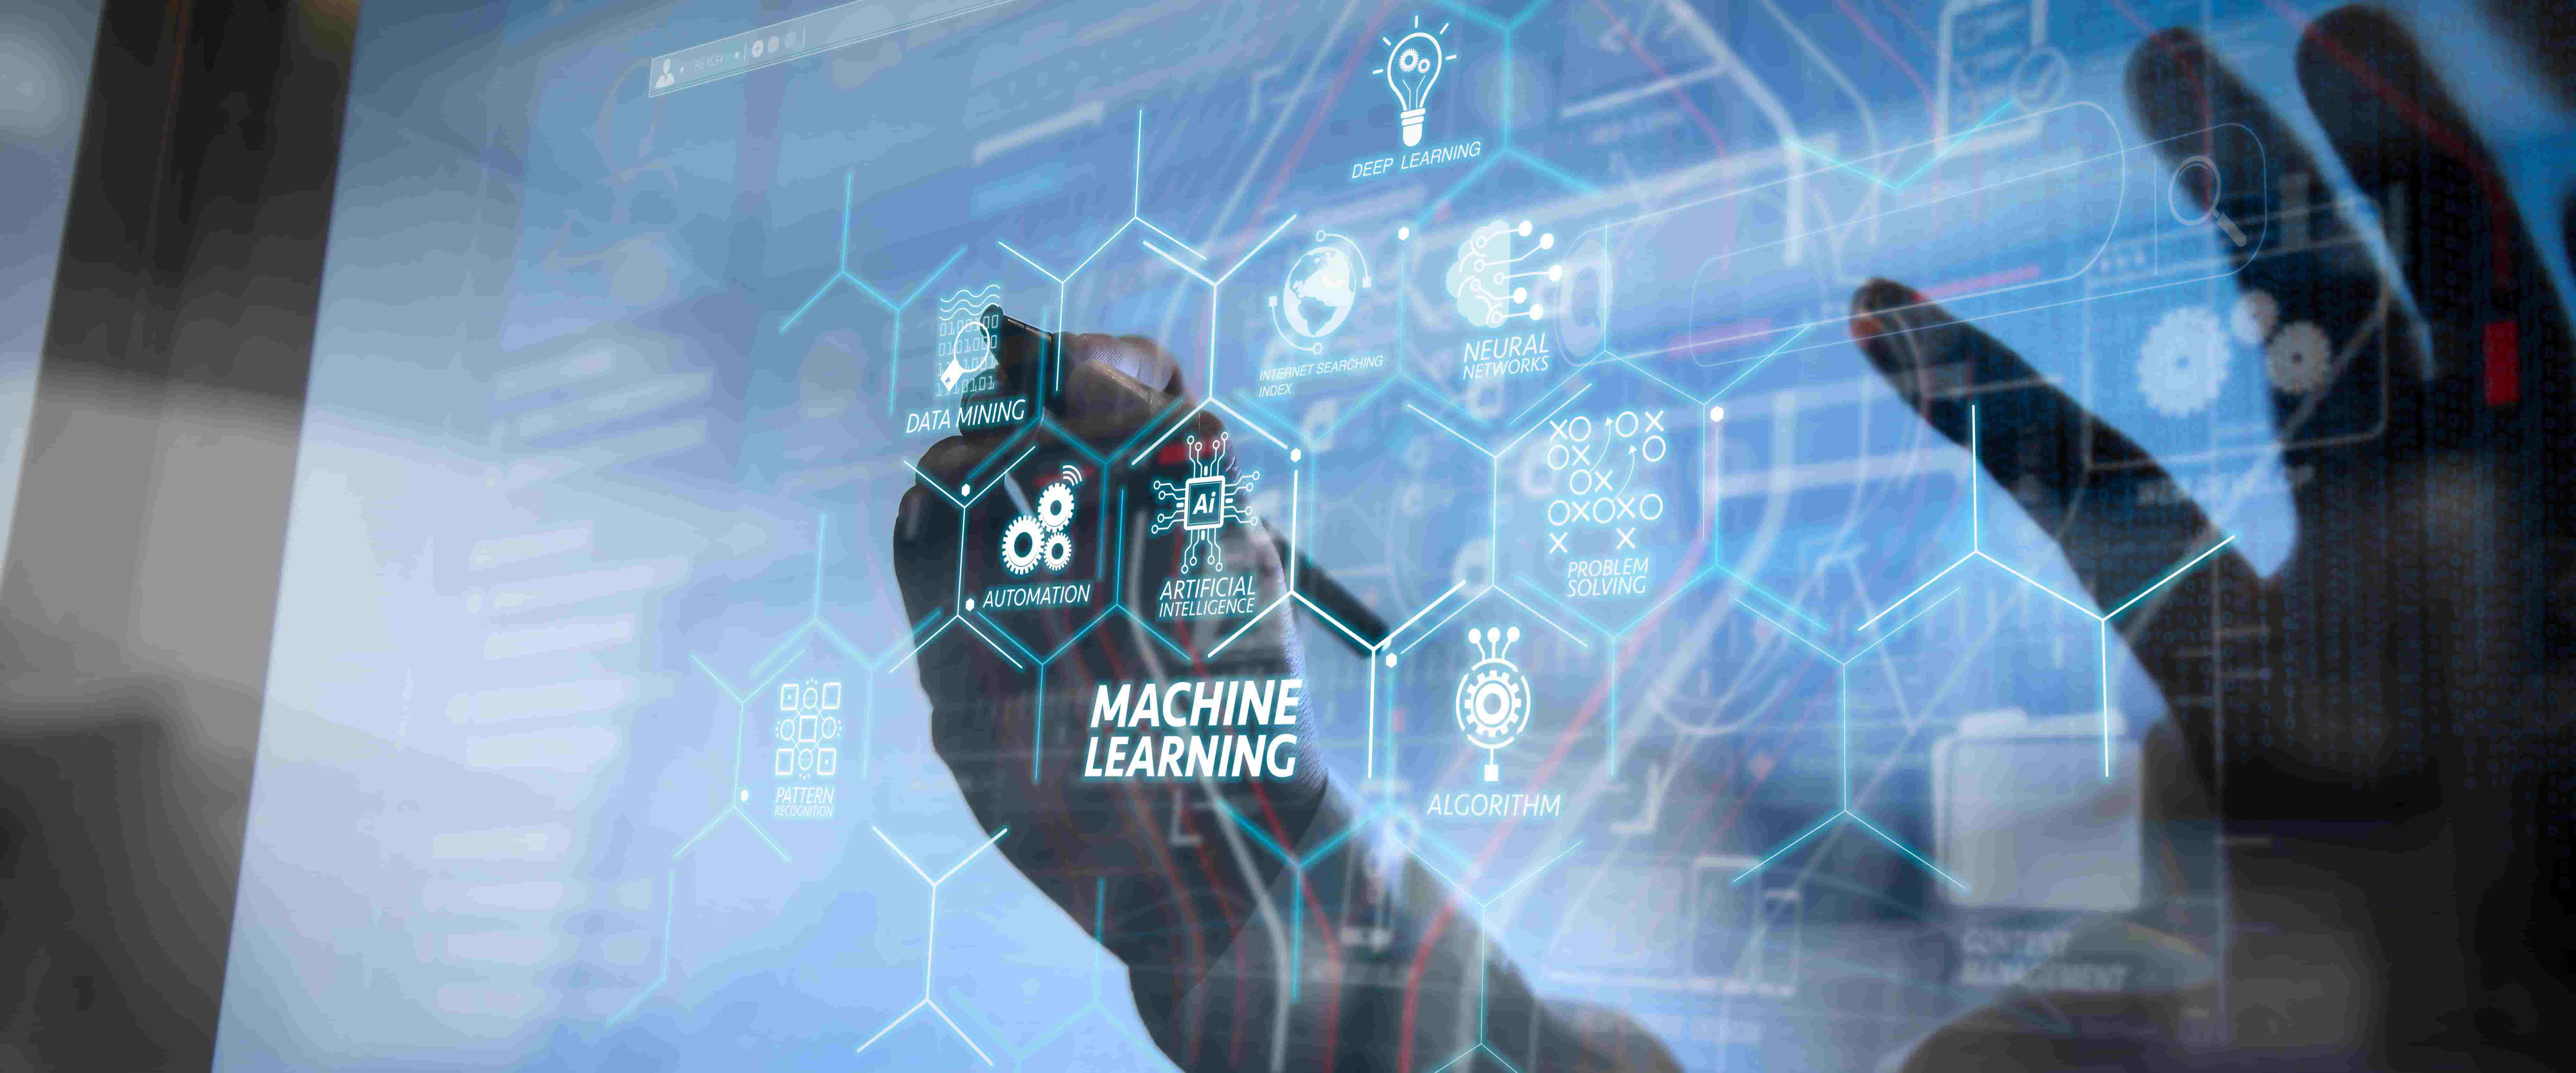 图片展示了一只手在触摸带有机器学习和人工智能元素的透明屏幕，屏幕上有多种符号和英文术语。